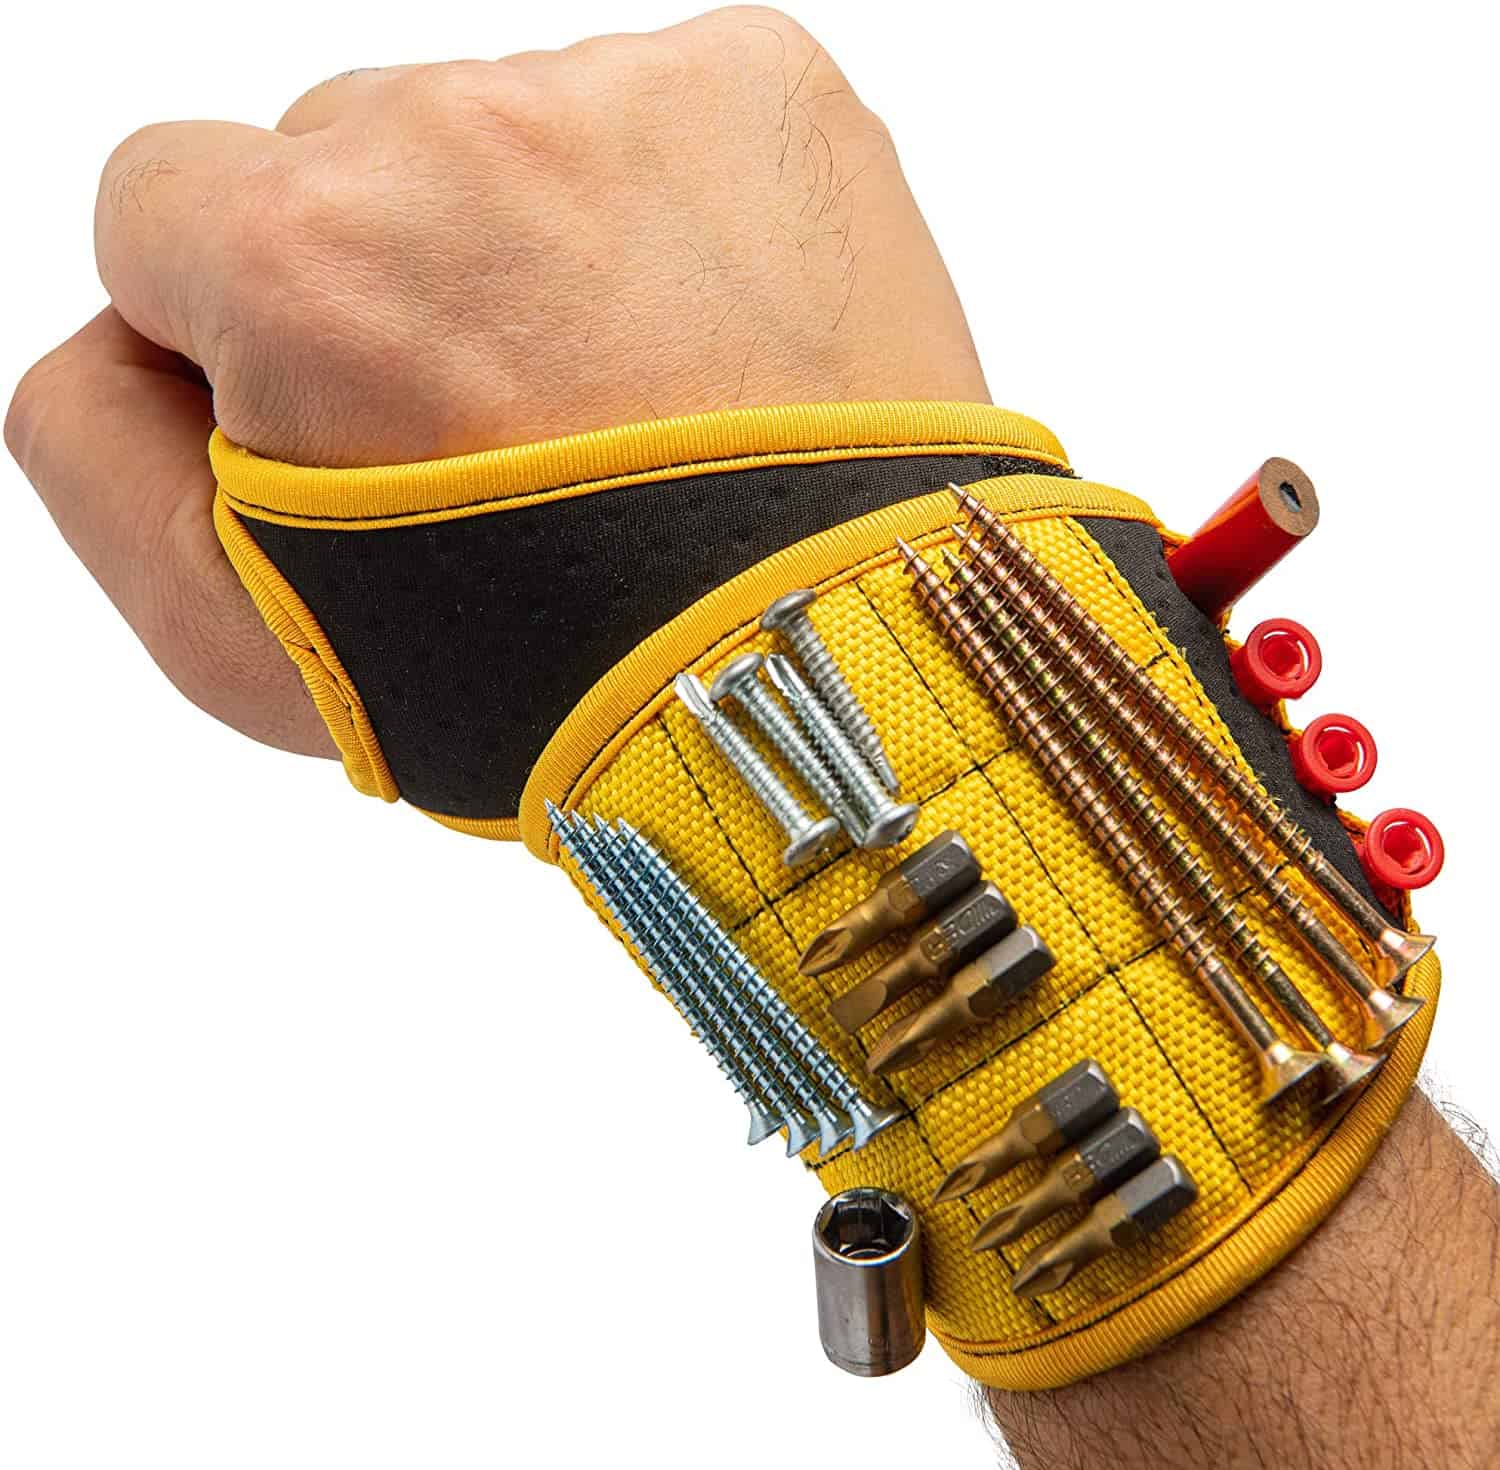 Najbolja magnetna narukvica sa podrškom za palac - BinyaTools Magnetic Wristband